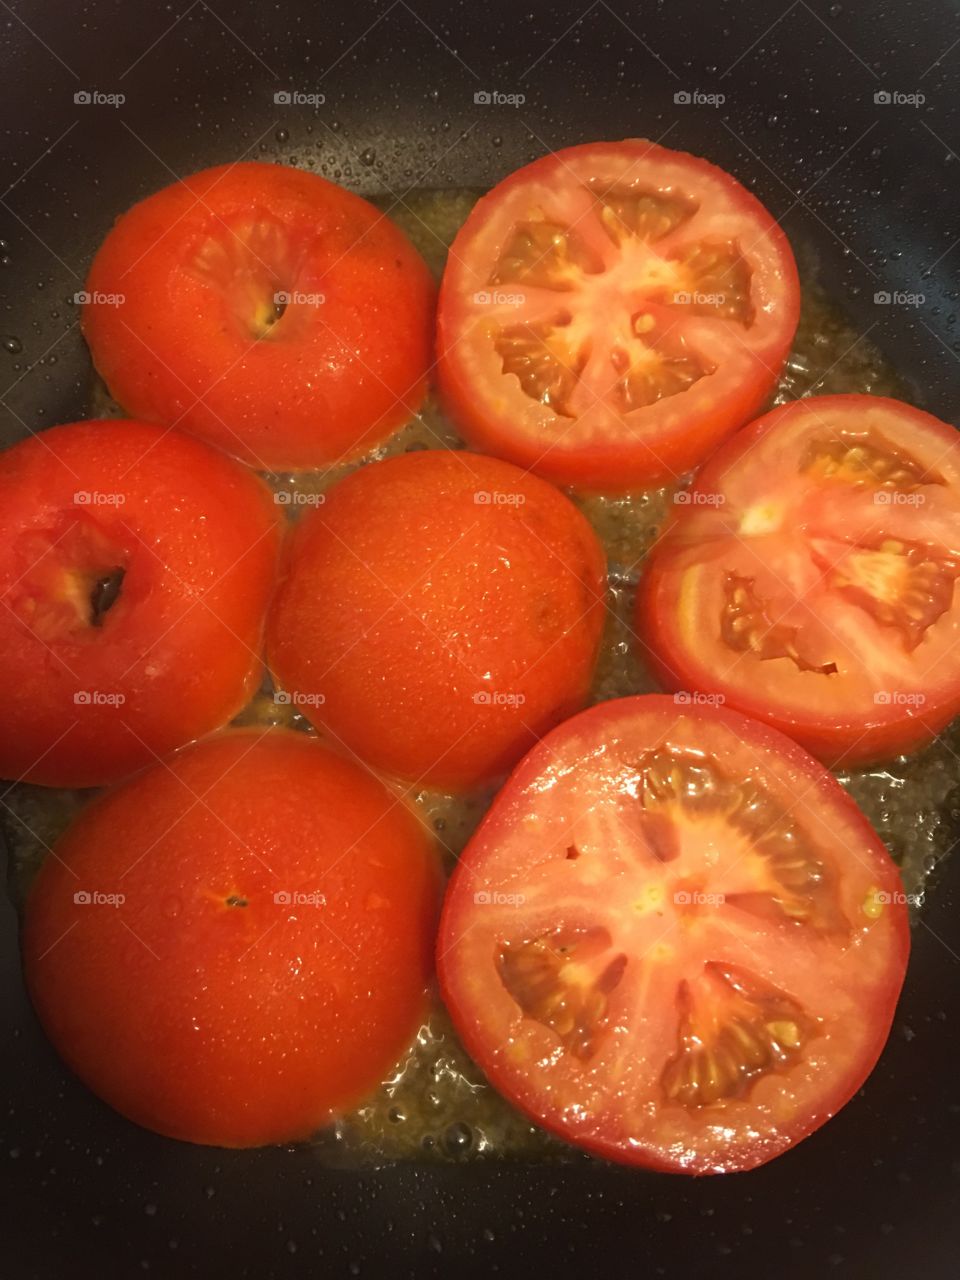 Caramelizing tomatoes